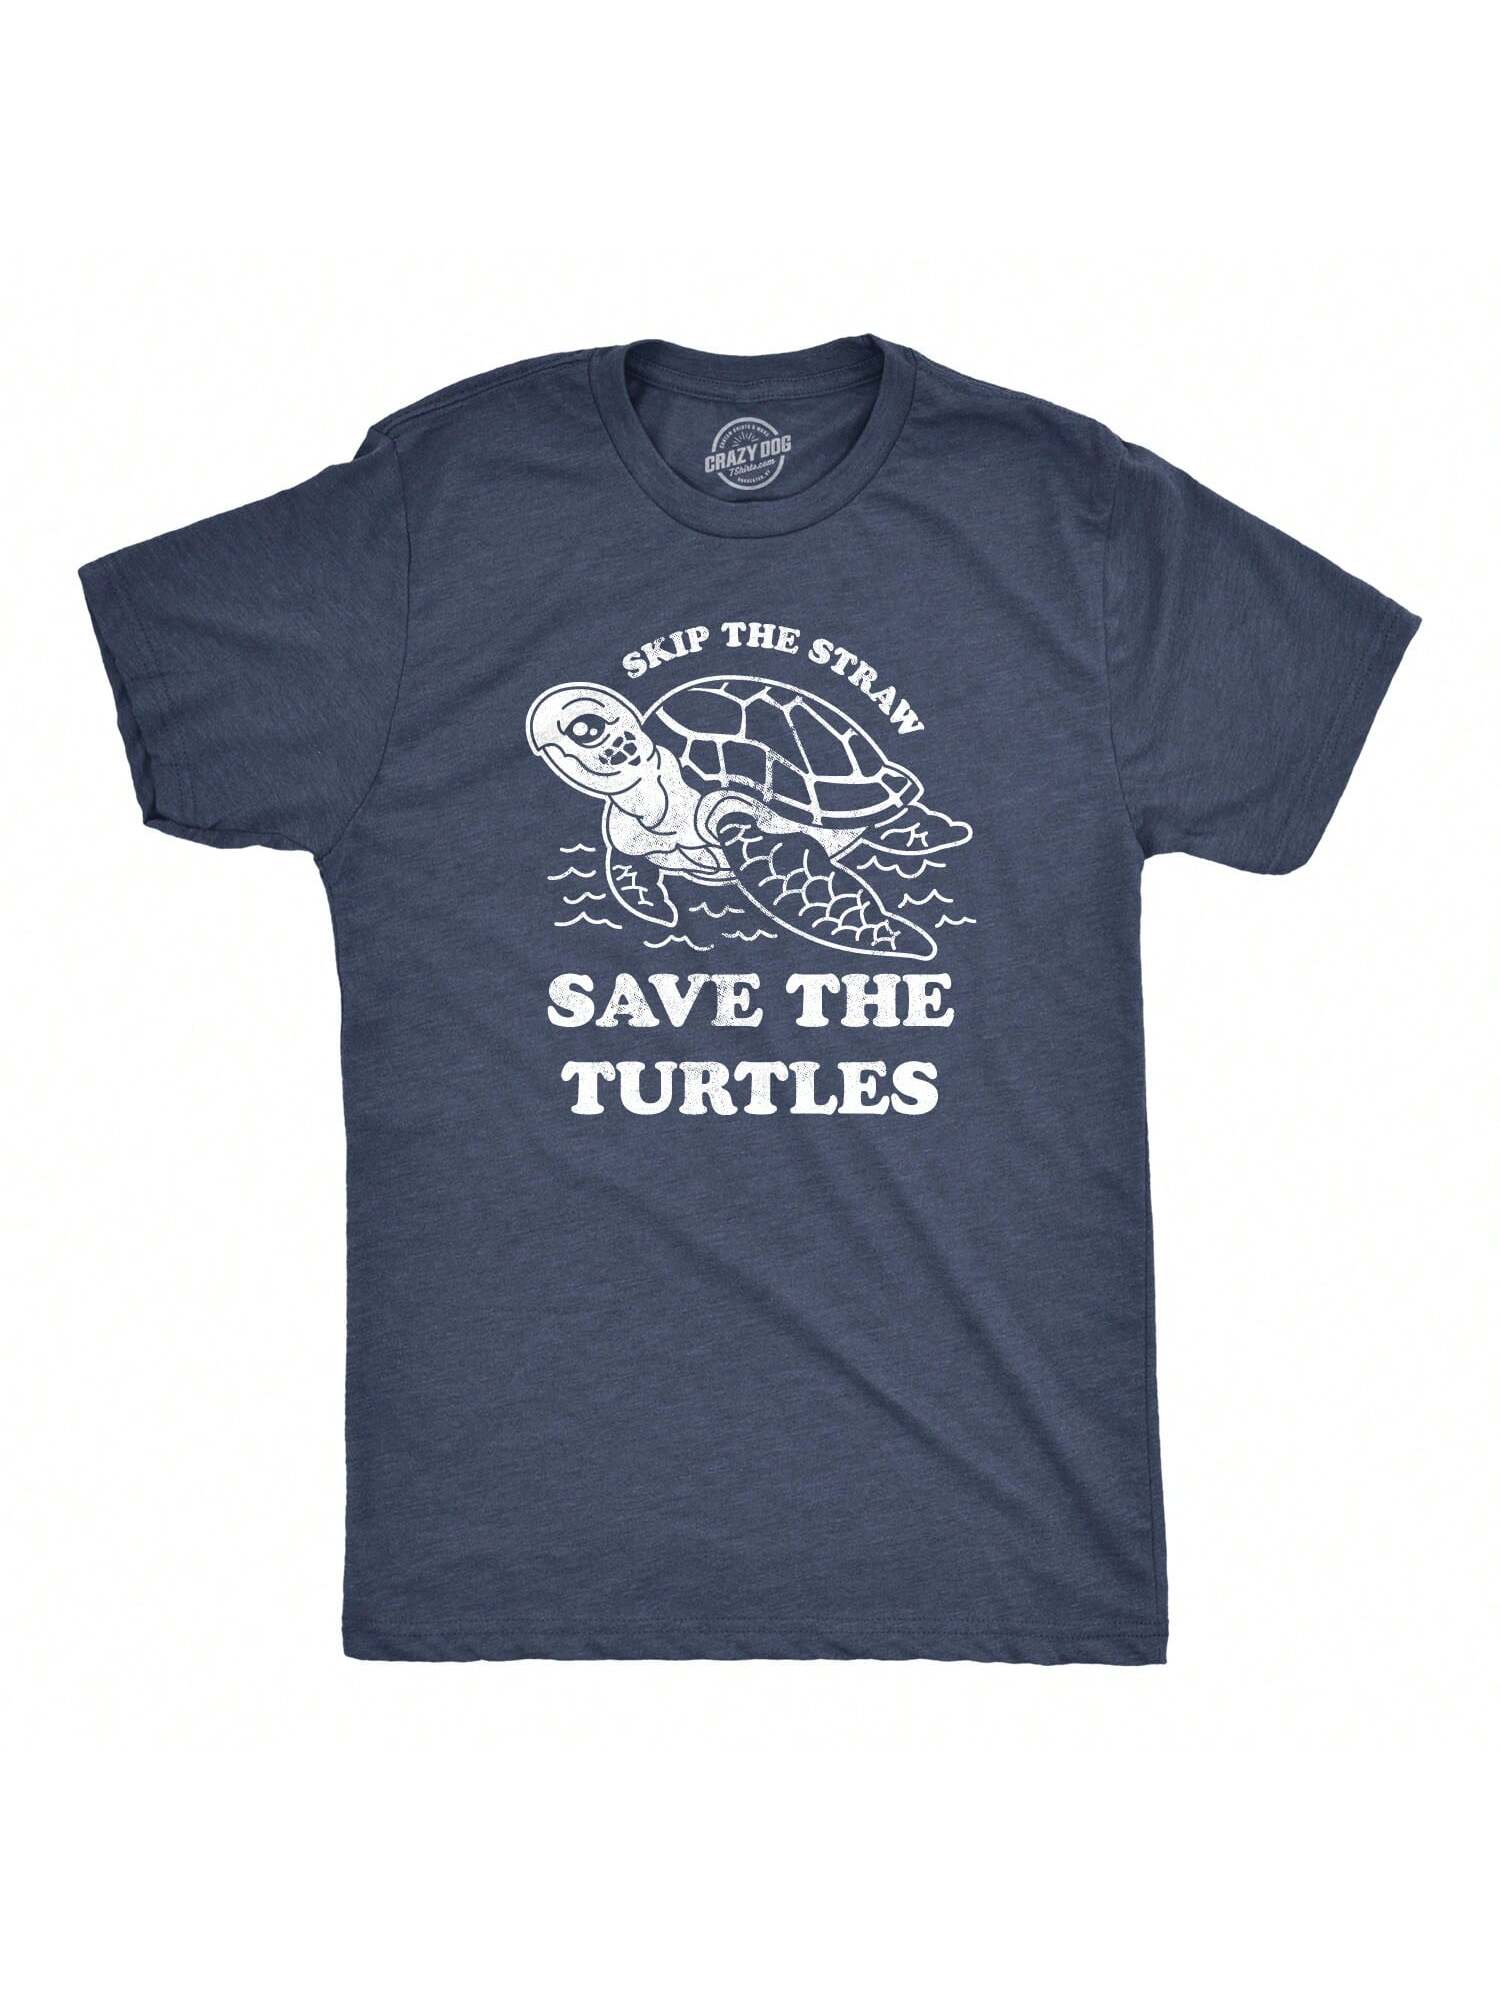 Мужская футболка Skip The Straw Save The Turtles с надписью «Экологическая осведомленность» (темно-синий Хизер)